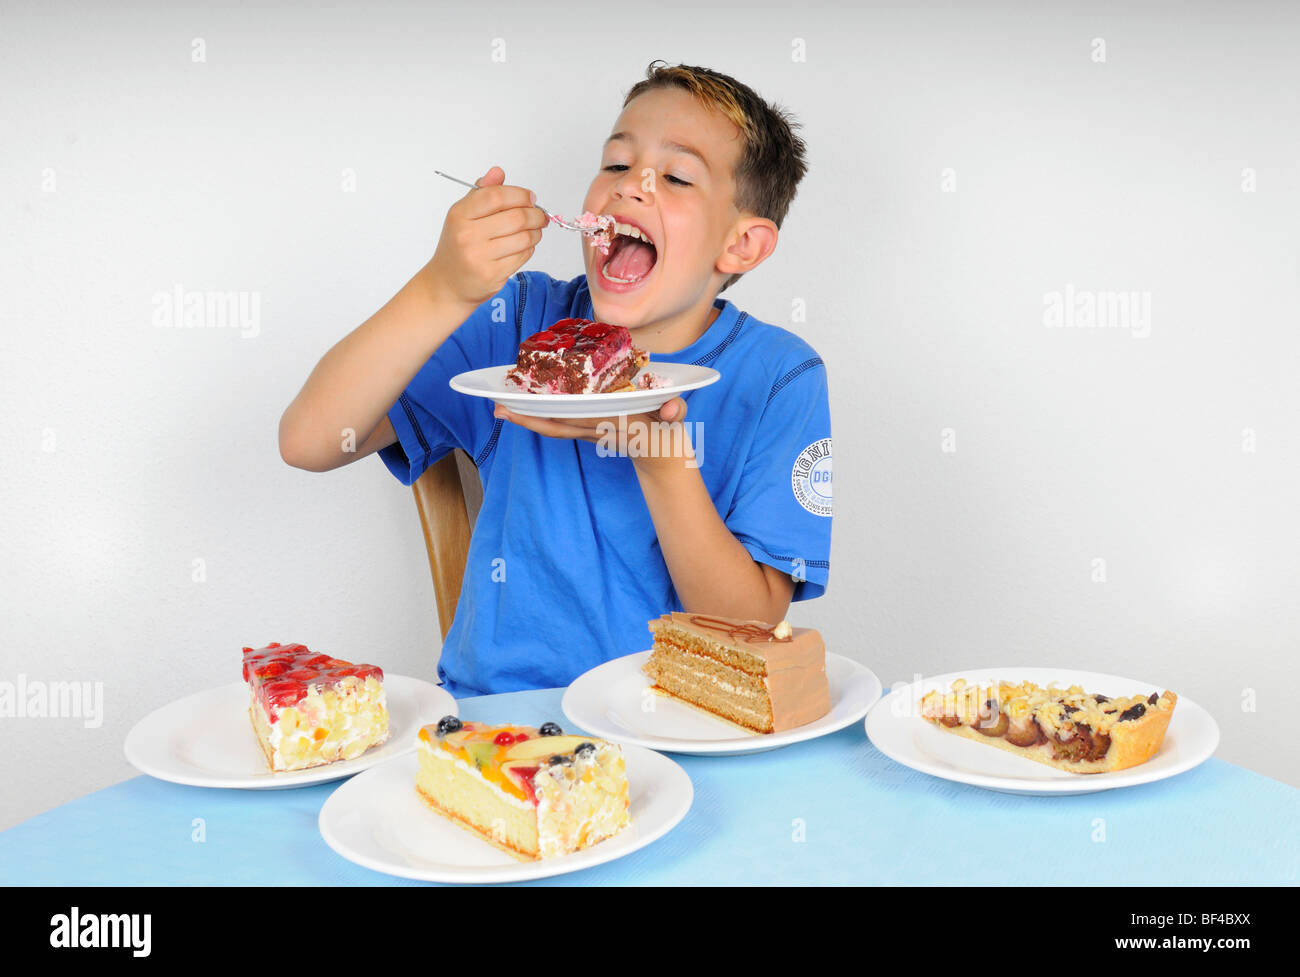 Junge, Kuchen essen, an einem Tisch mit vier Platten mit anderen Stücke des Kuchens Stockfoto